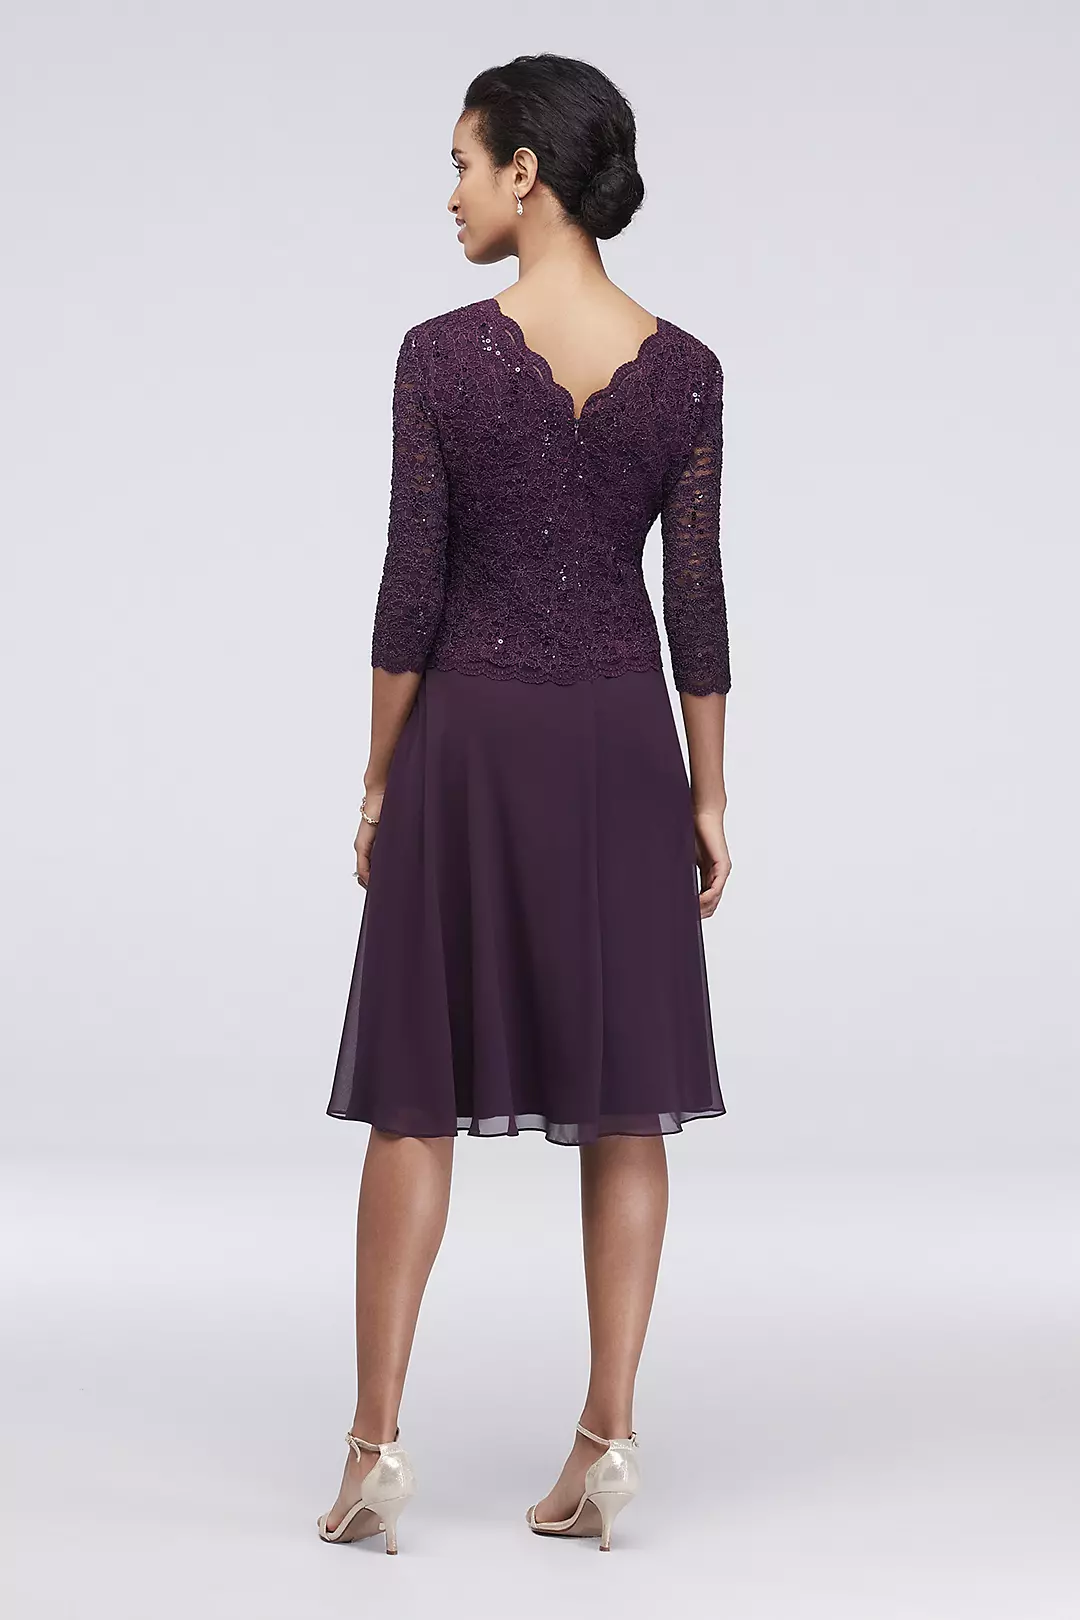 Sequin Lace Scoopneck Short A-Line Petite Dress Image 2